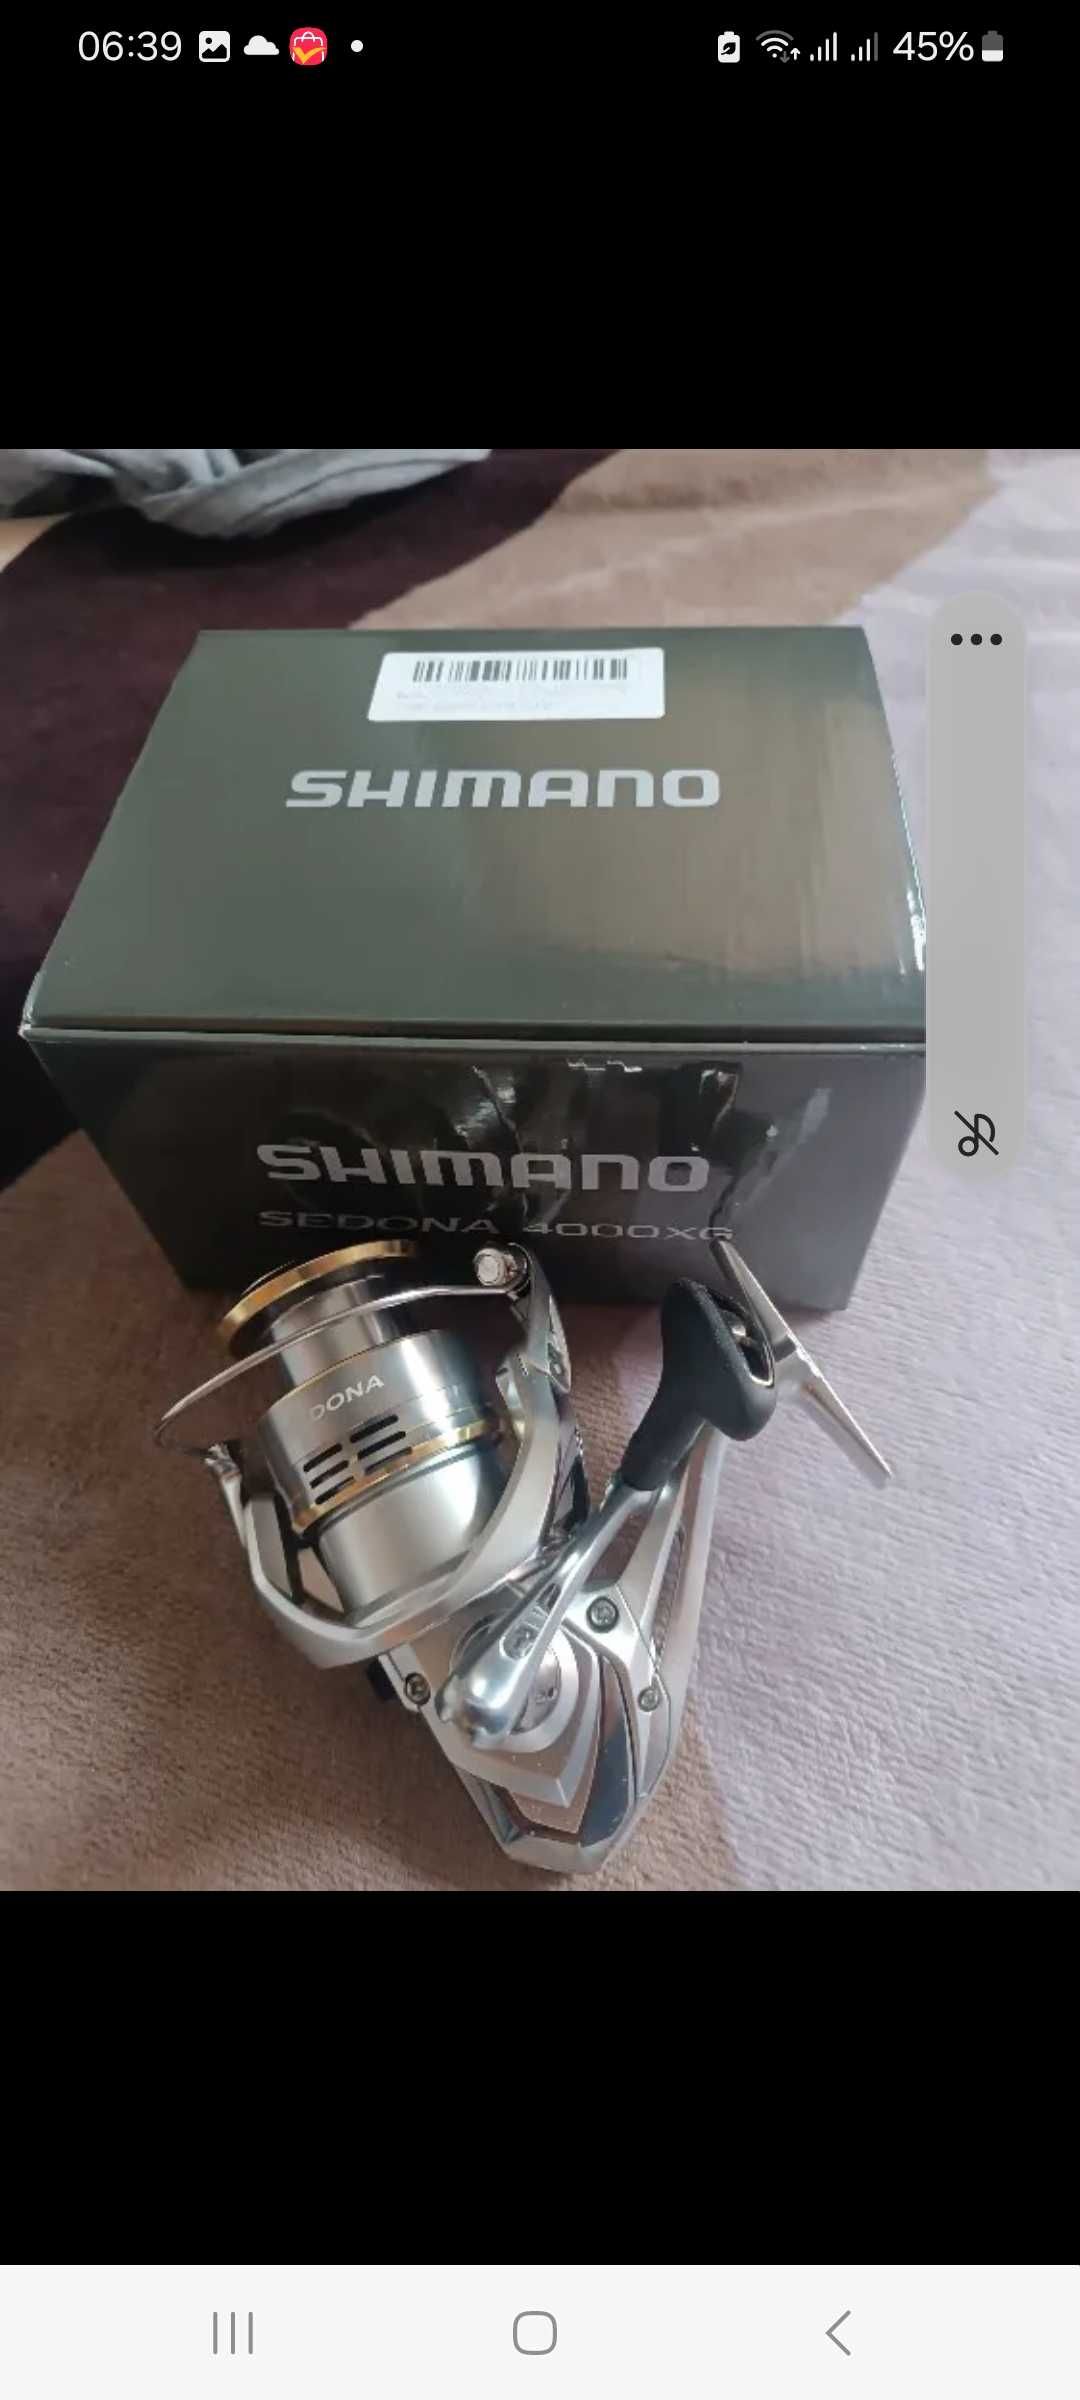 Катушка рыболовная SHIMANO SEDONA 4000 , новая .